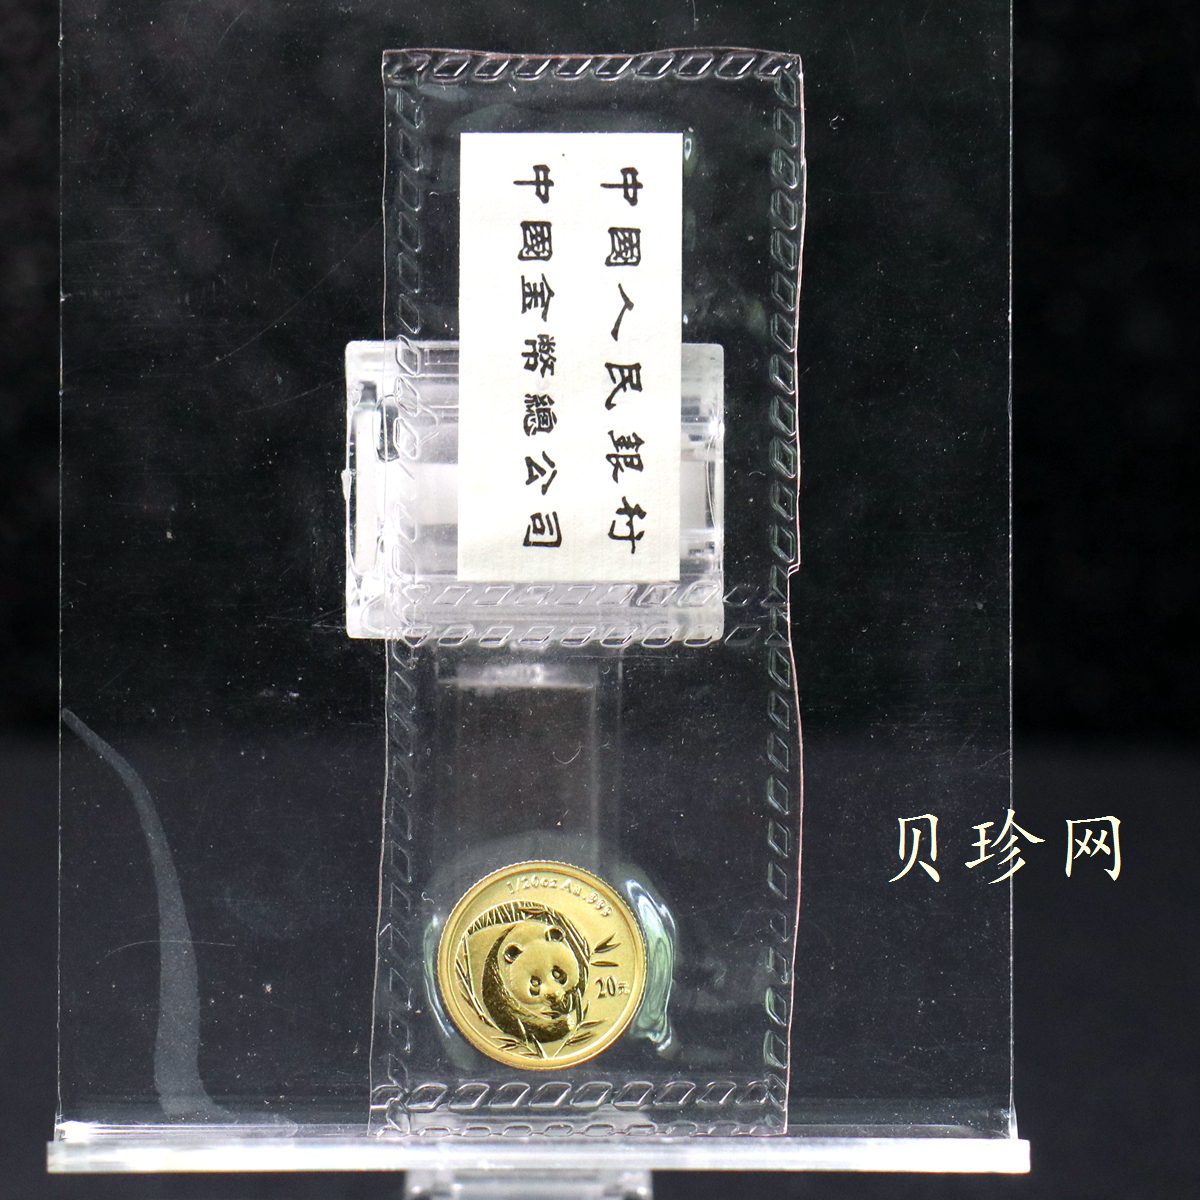 【030303】2003年熊猫1/20盎司普制金币